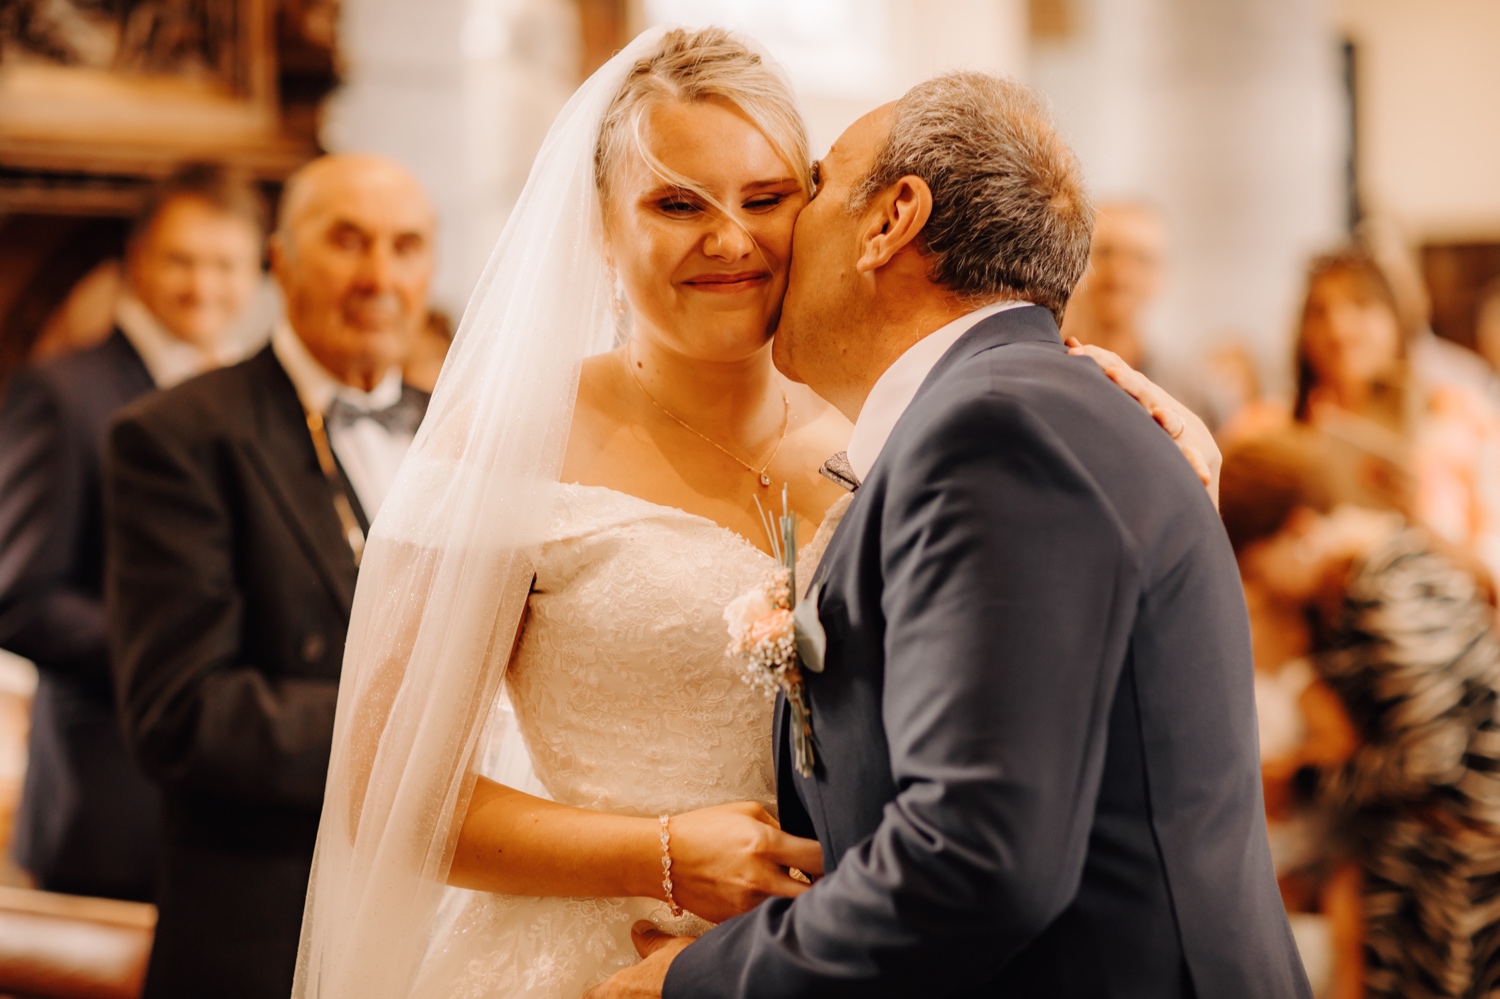 Huwelijksfotograaf Limburg - vader geeft bruid een kus op de wang